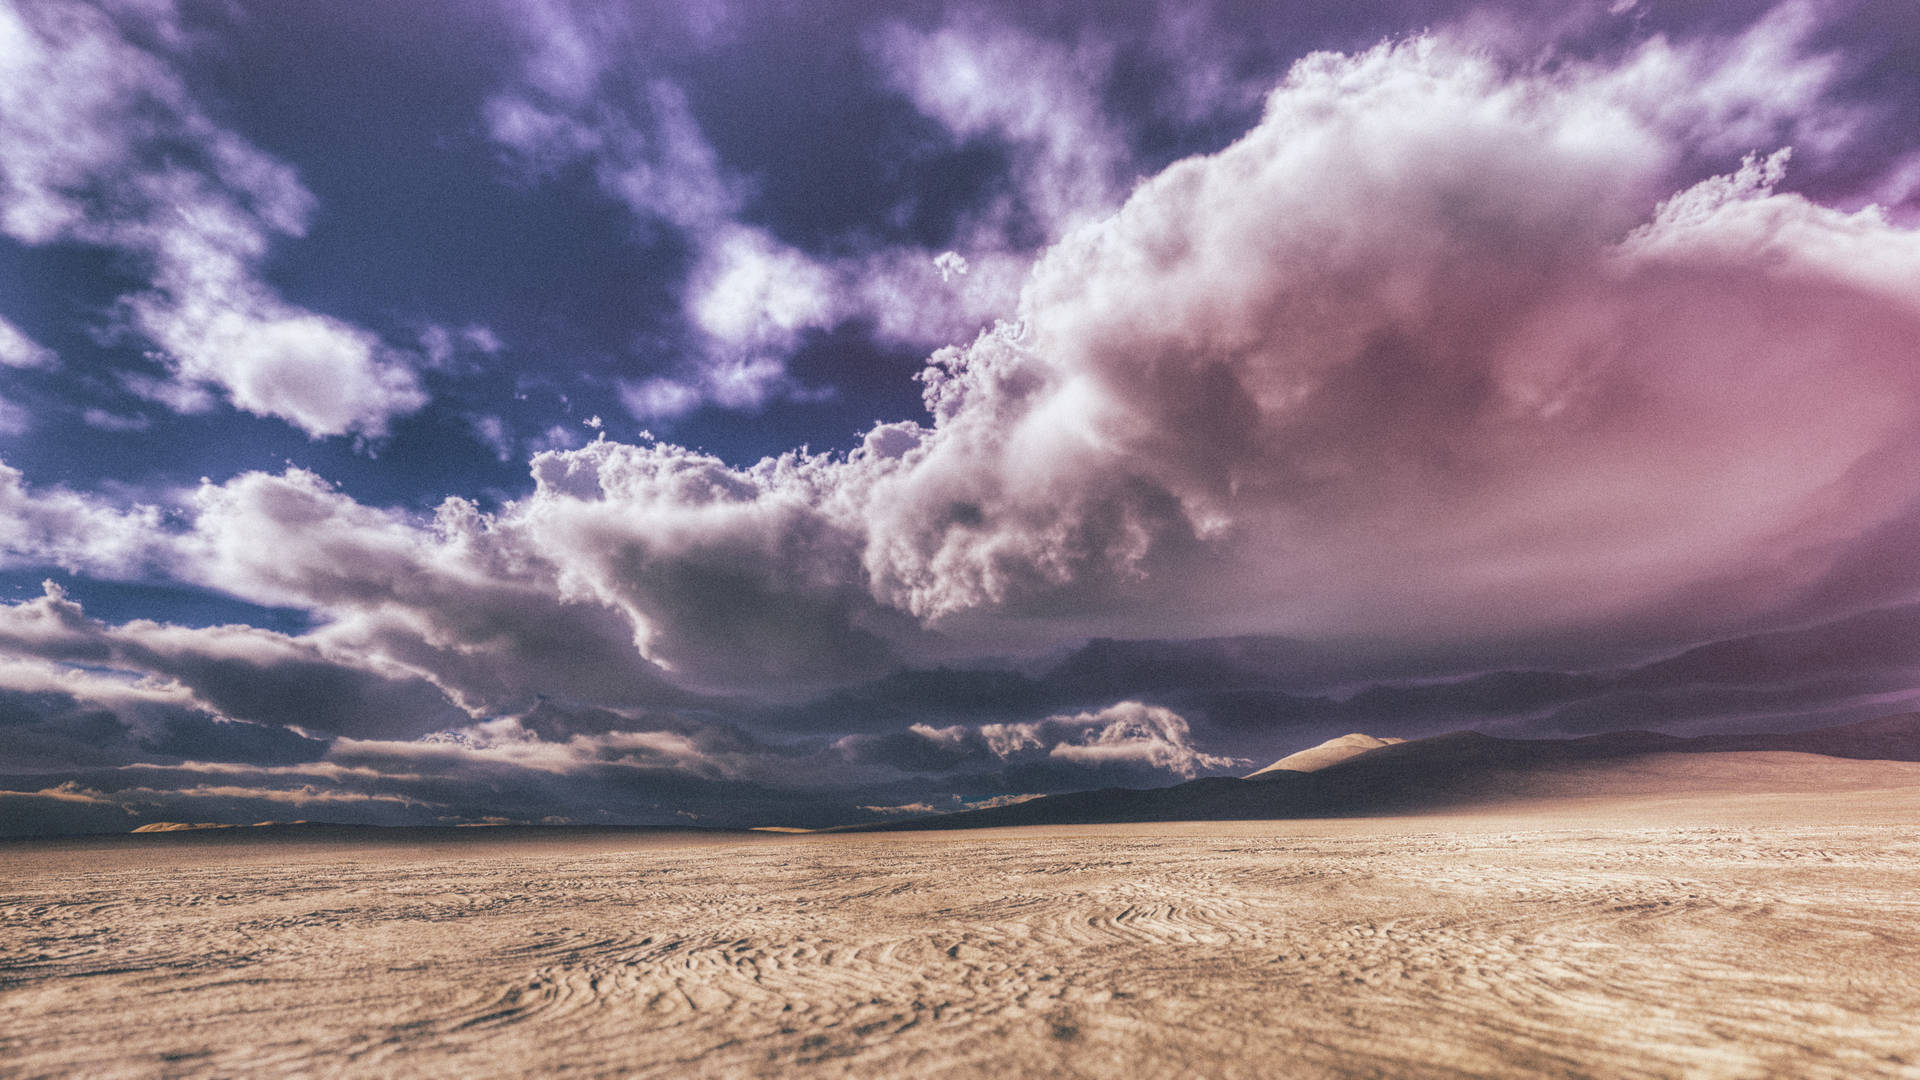 Desert Under Dense Clouds Background